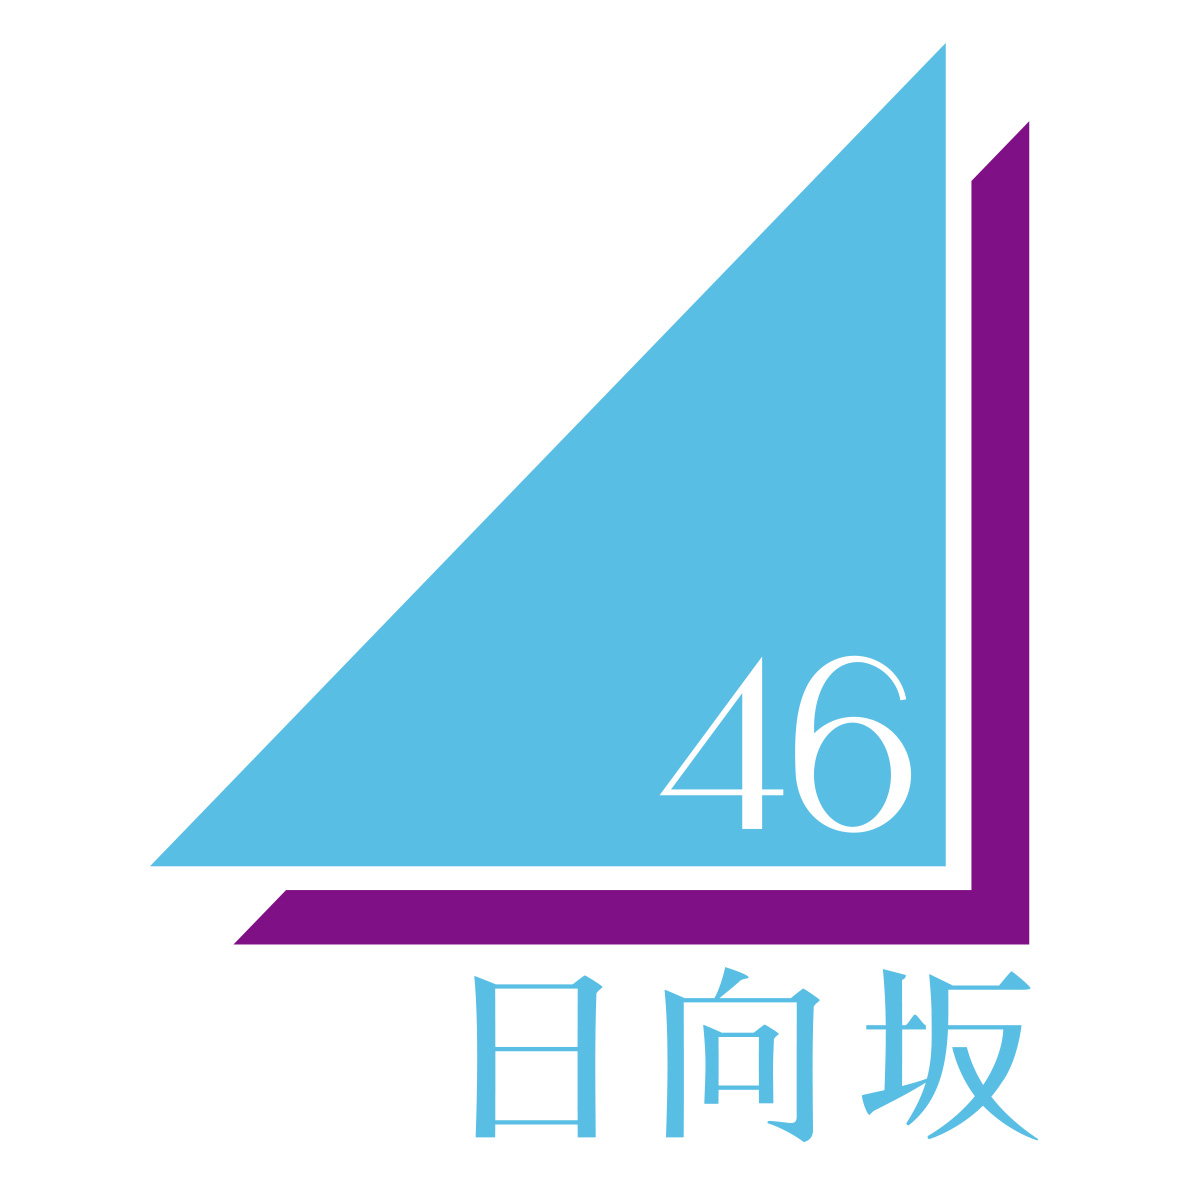 日向坂46公式サイト